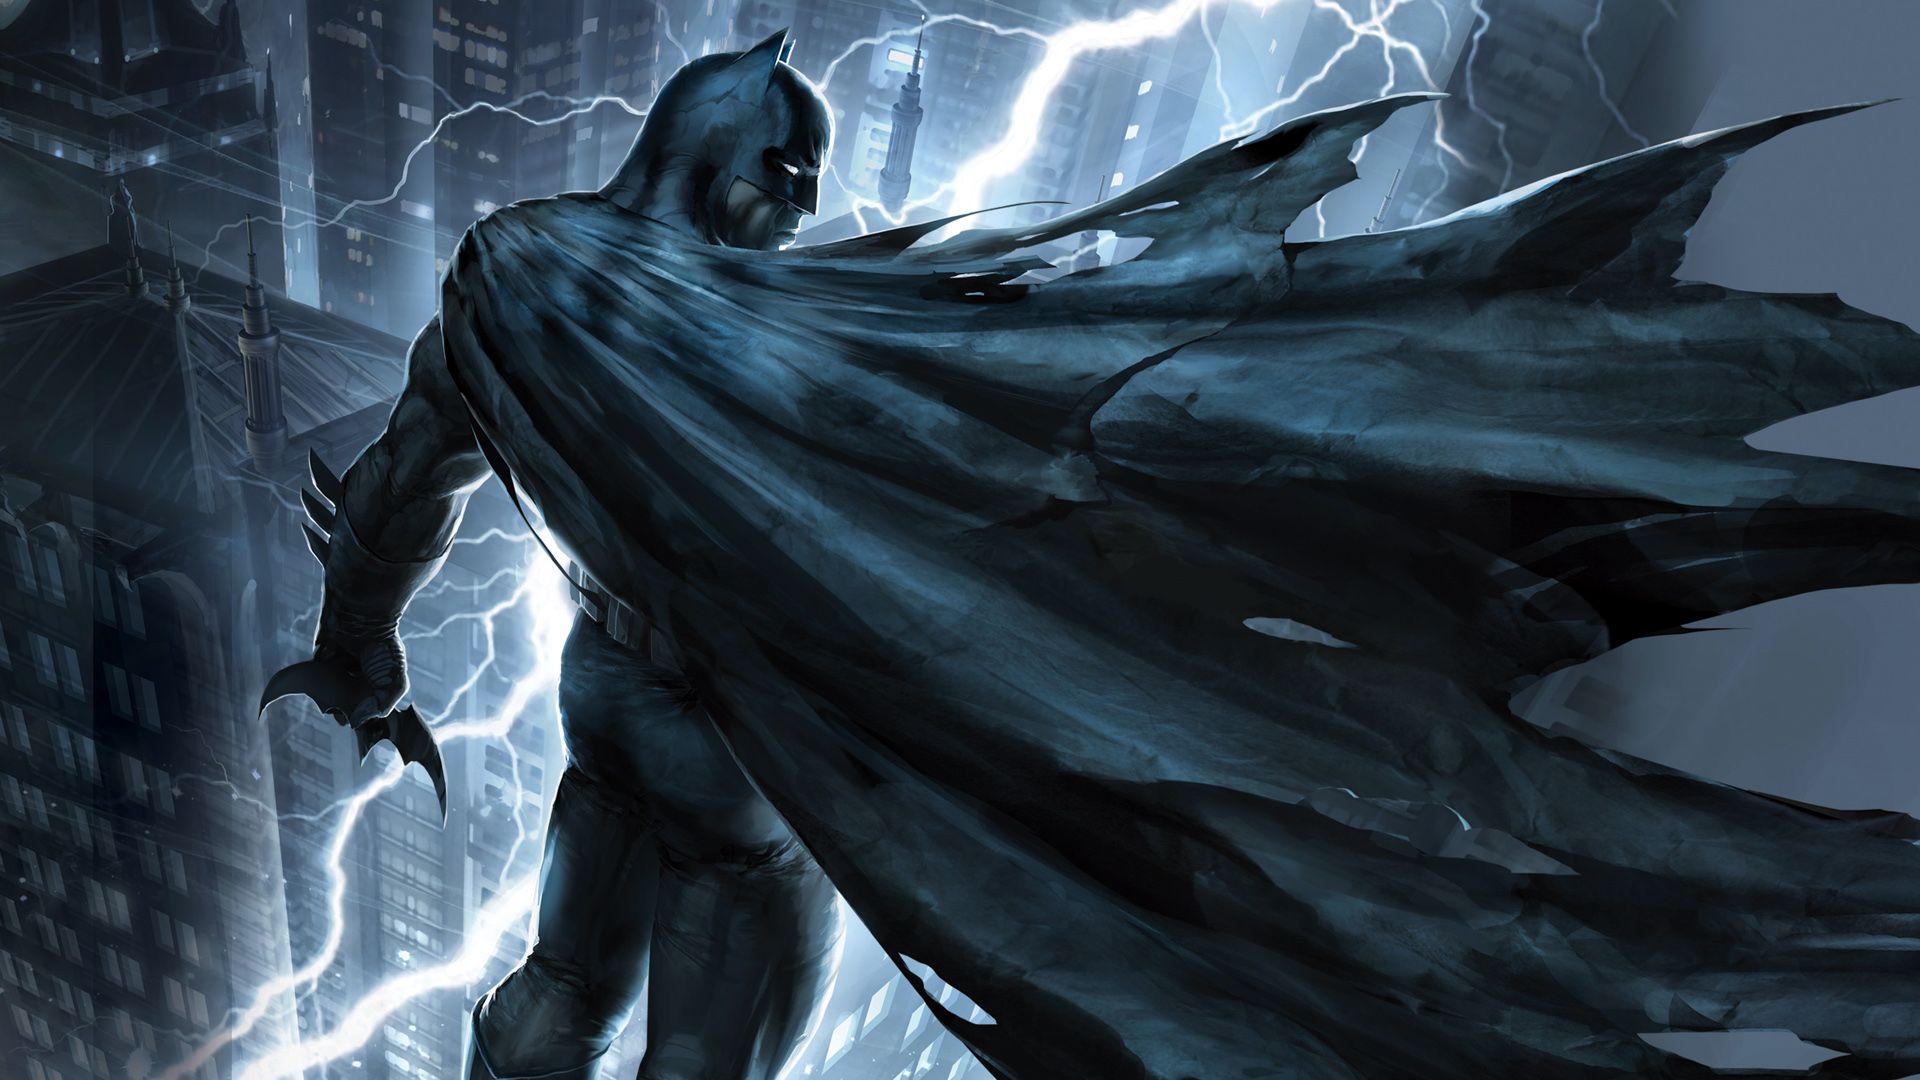 Batman: The Dark Knight Returns, Part 1 background